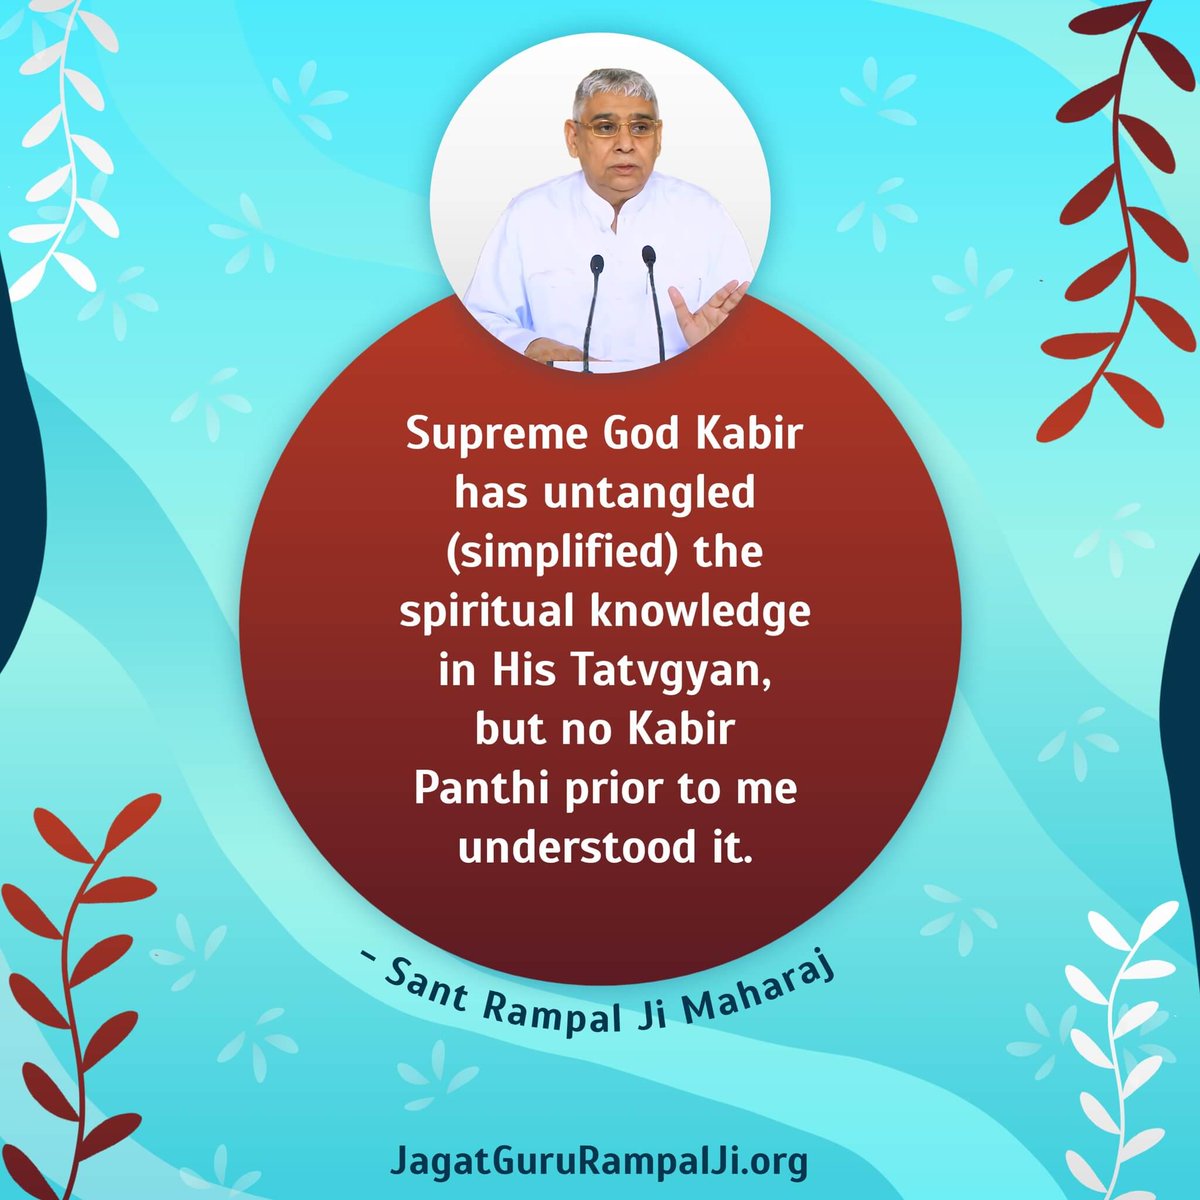 #GodMorningSaturday Supreme God Kabir has untangled (simplified) the spiritual knowledge in His Tatvgyan, but no Kabir Panthi prior to me understood it. For more inforamation visit jagatguruRampalJi.org